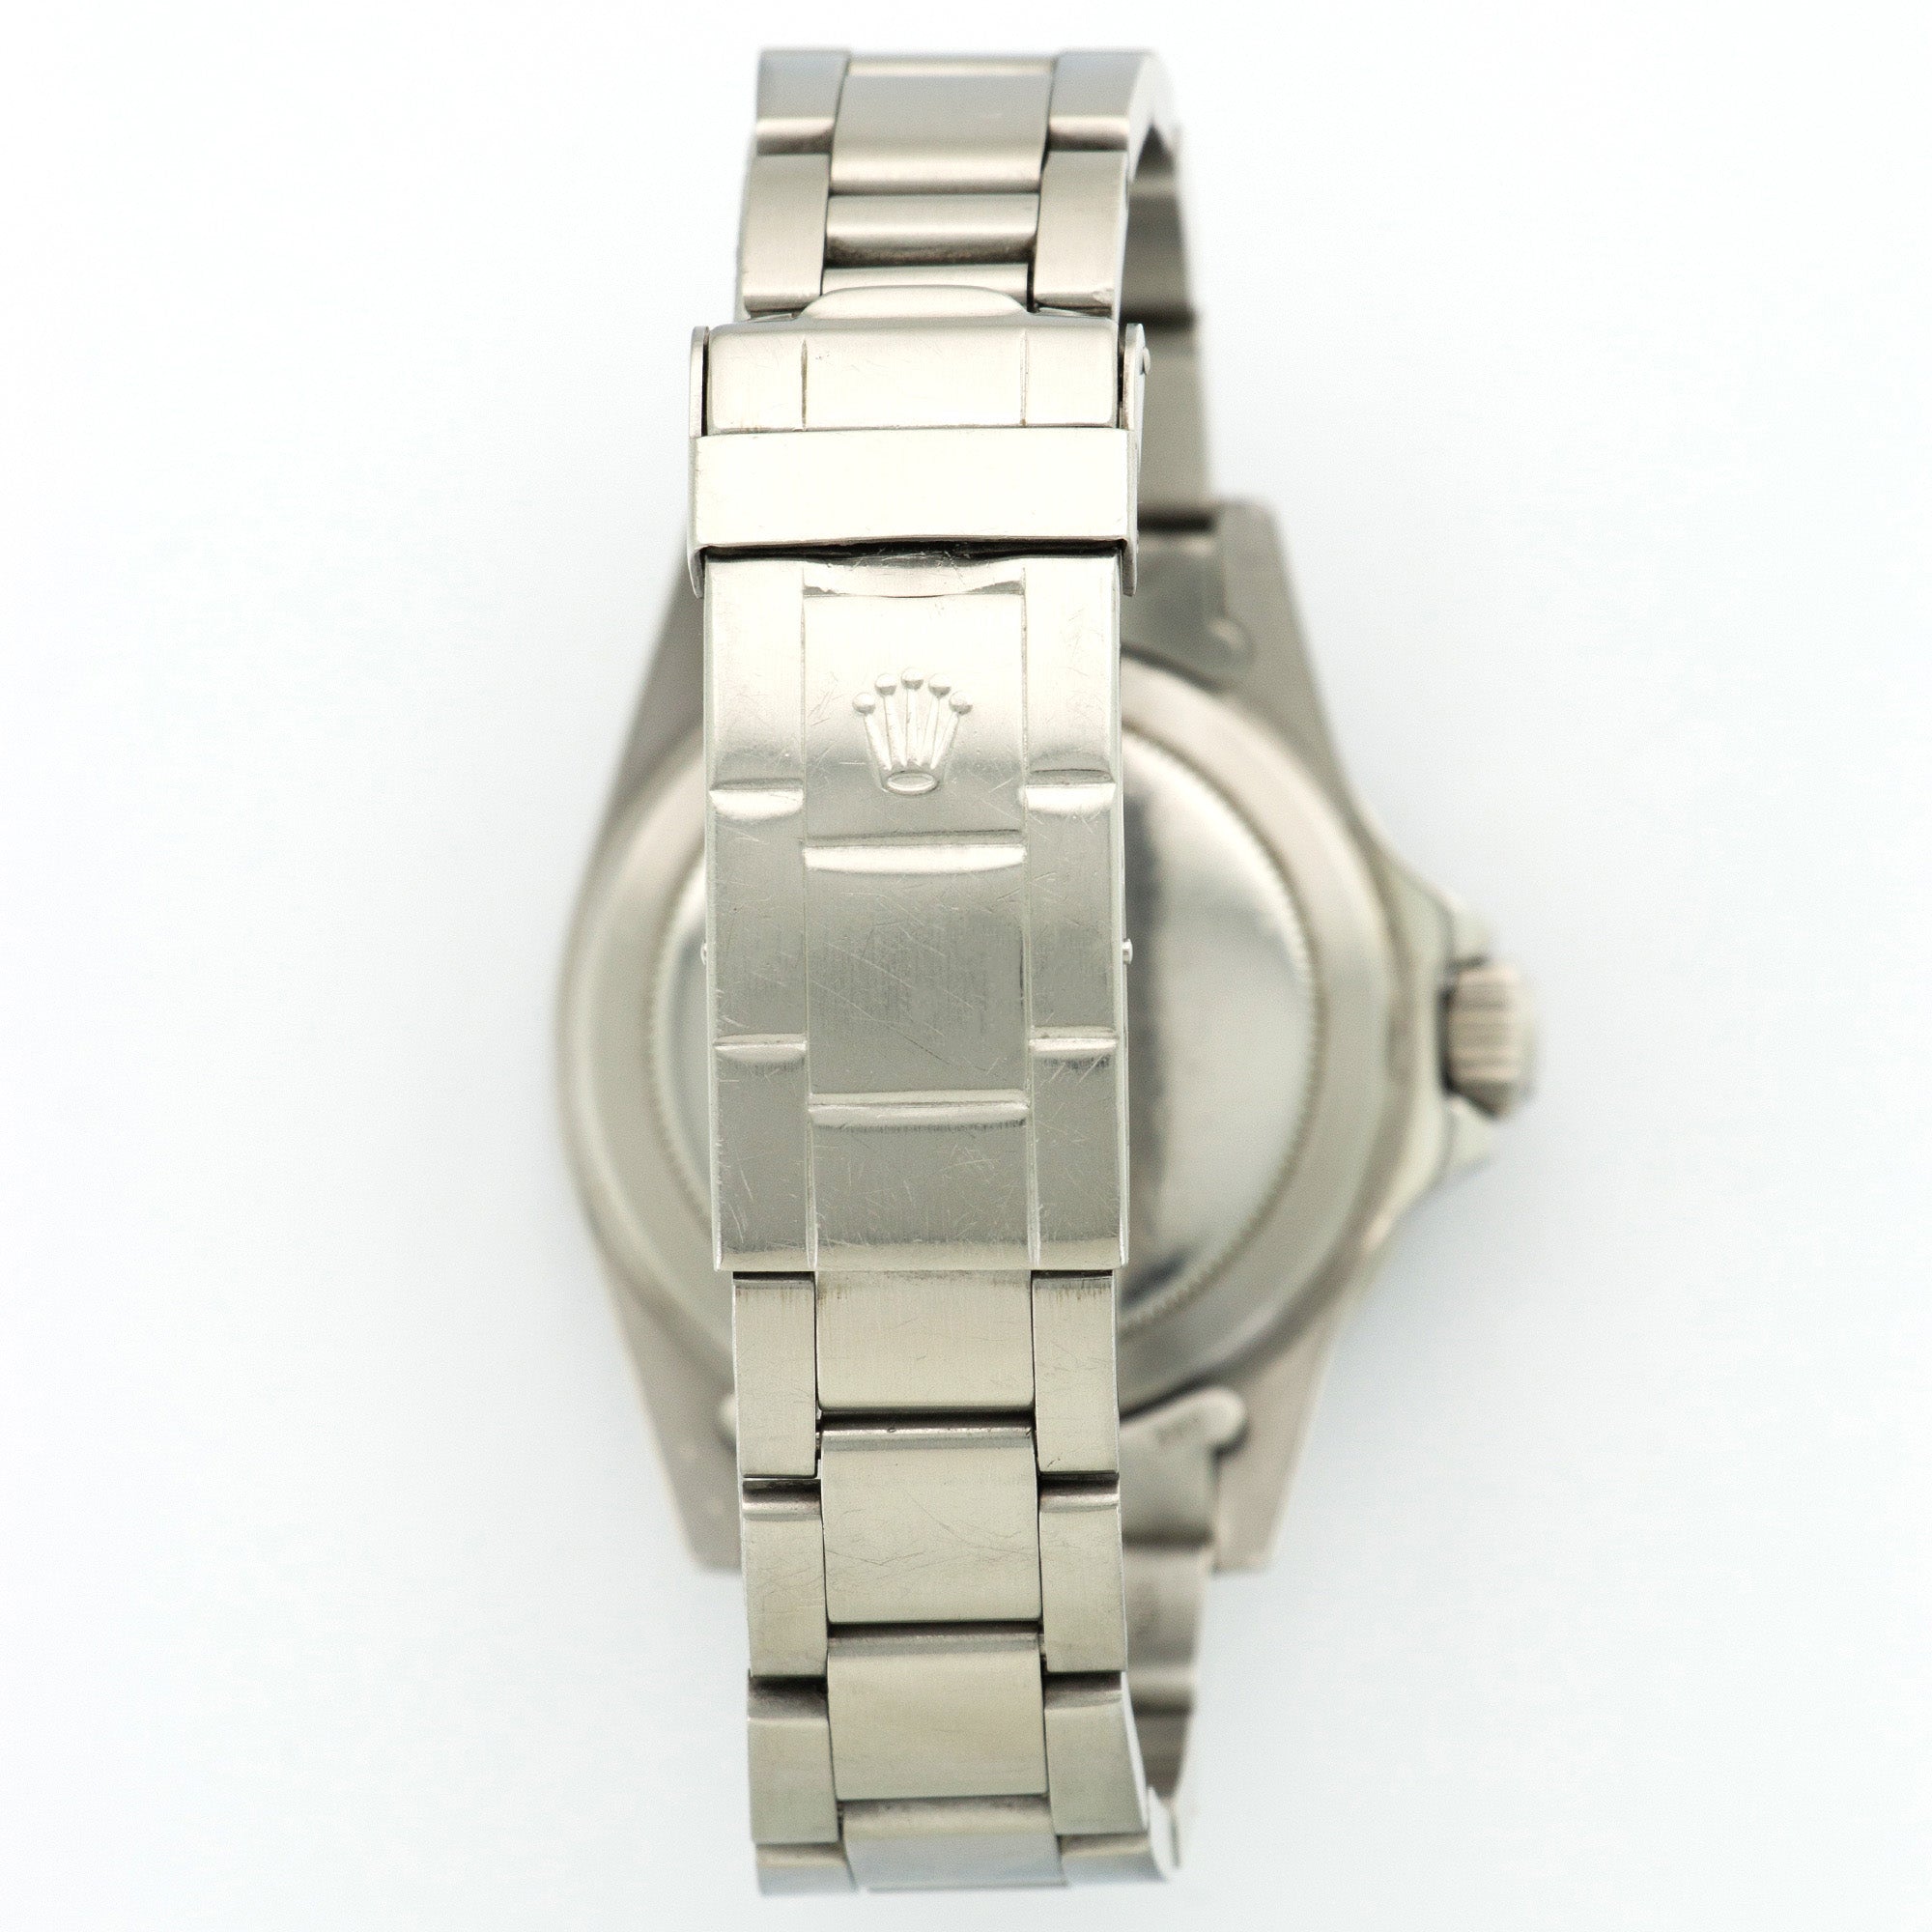 Rolex - Rolex Submariner Watch Ref. 5513 - The Keystone Watches